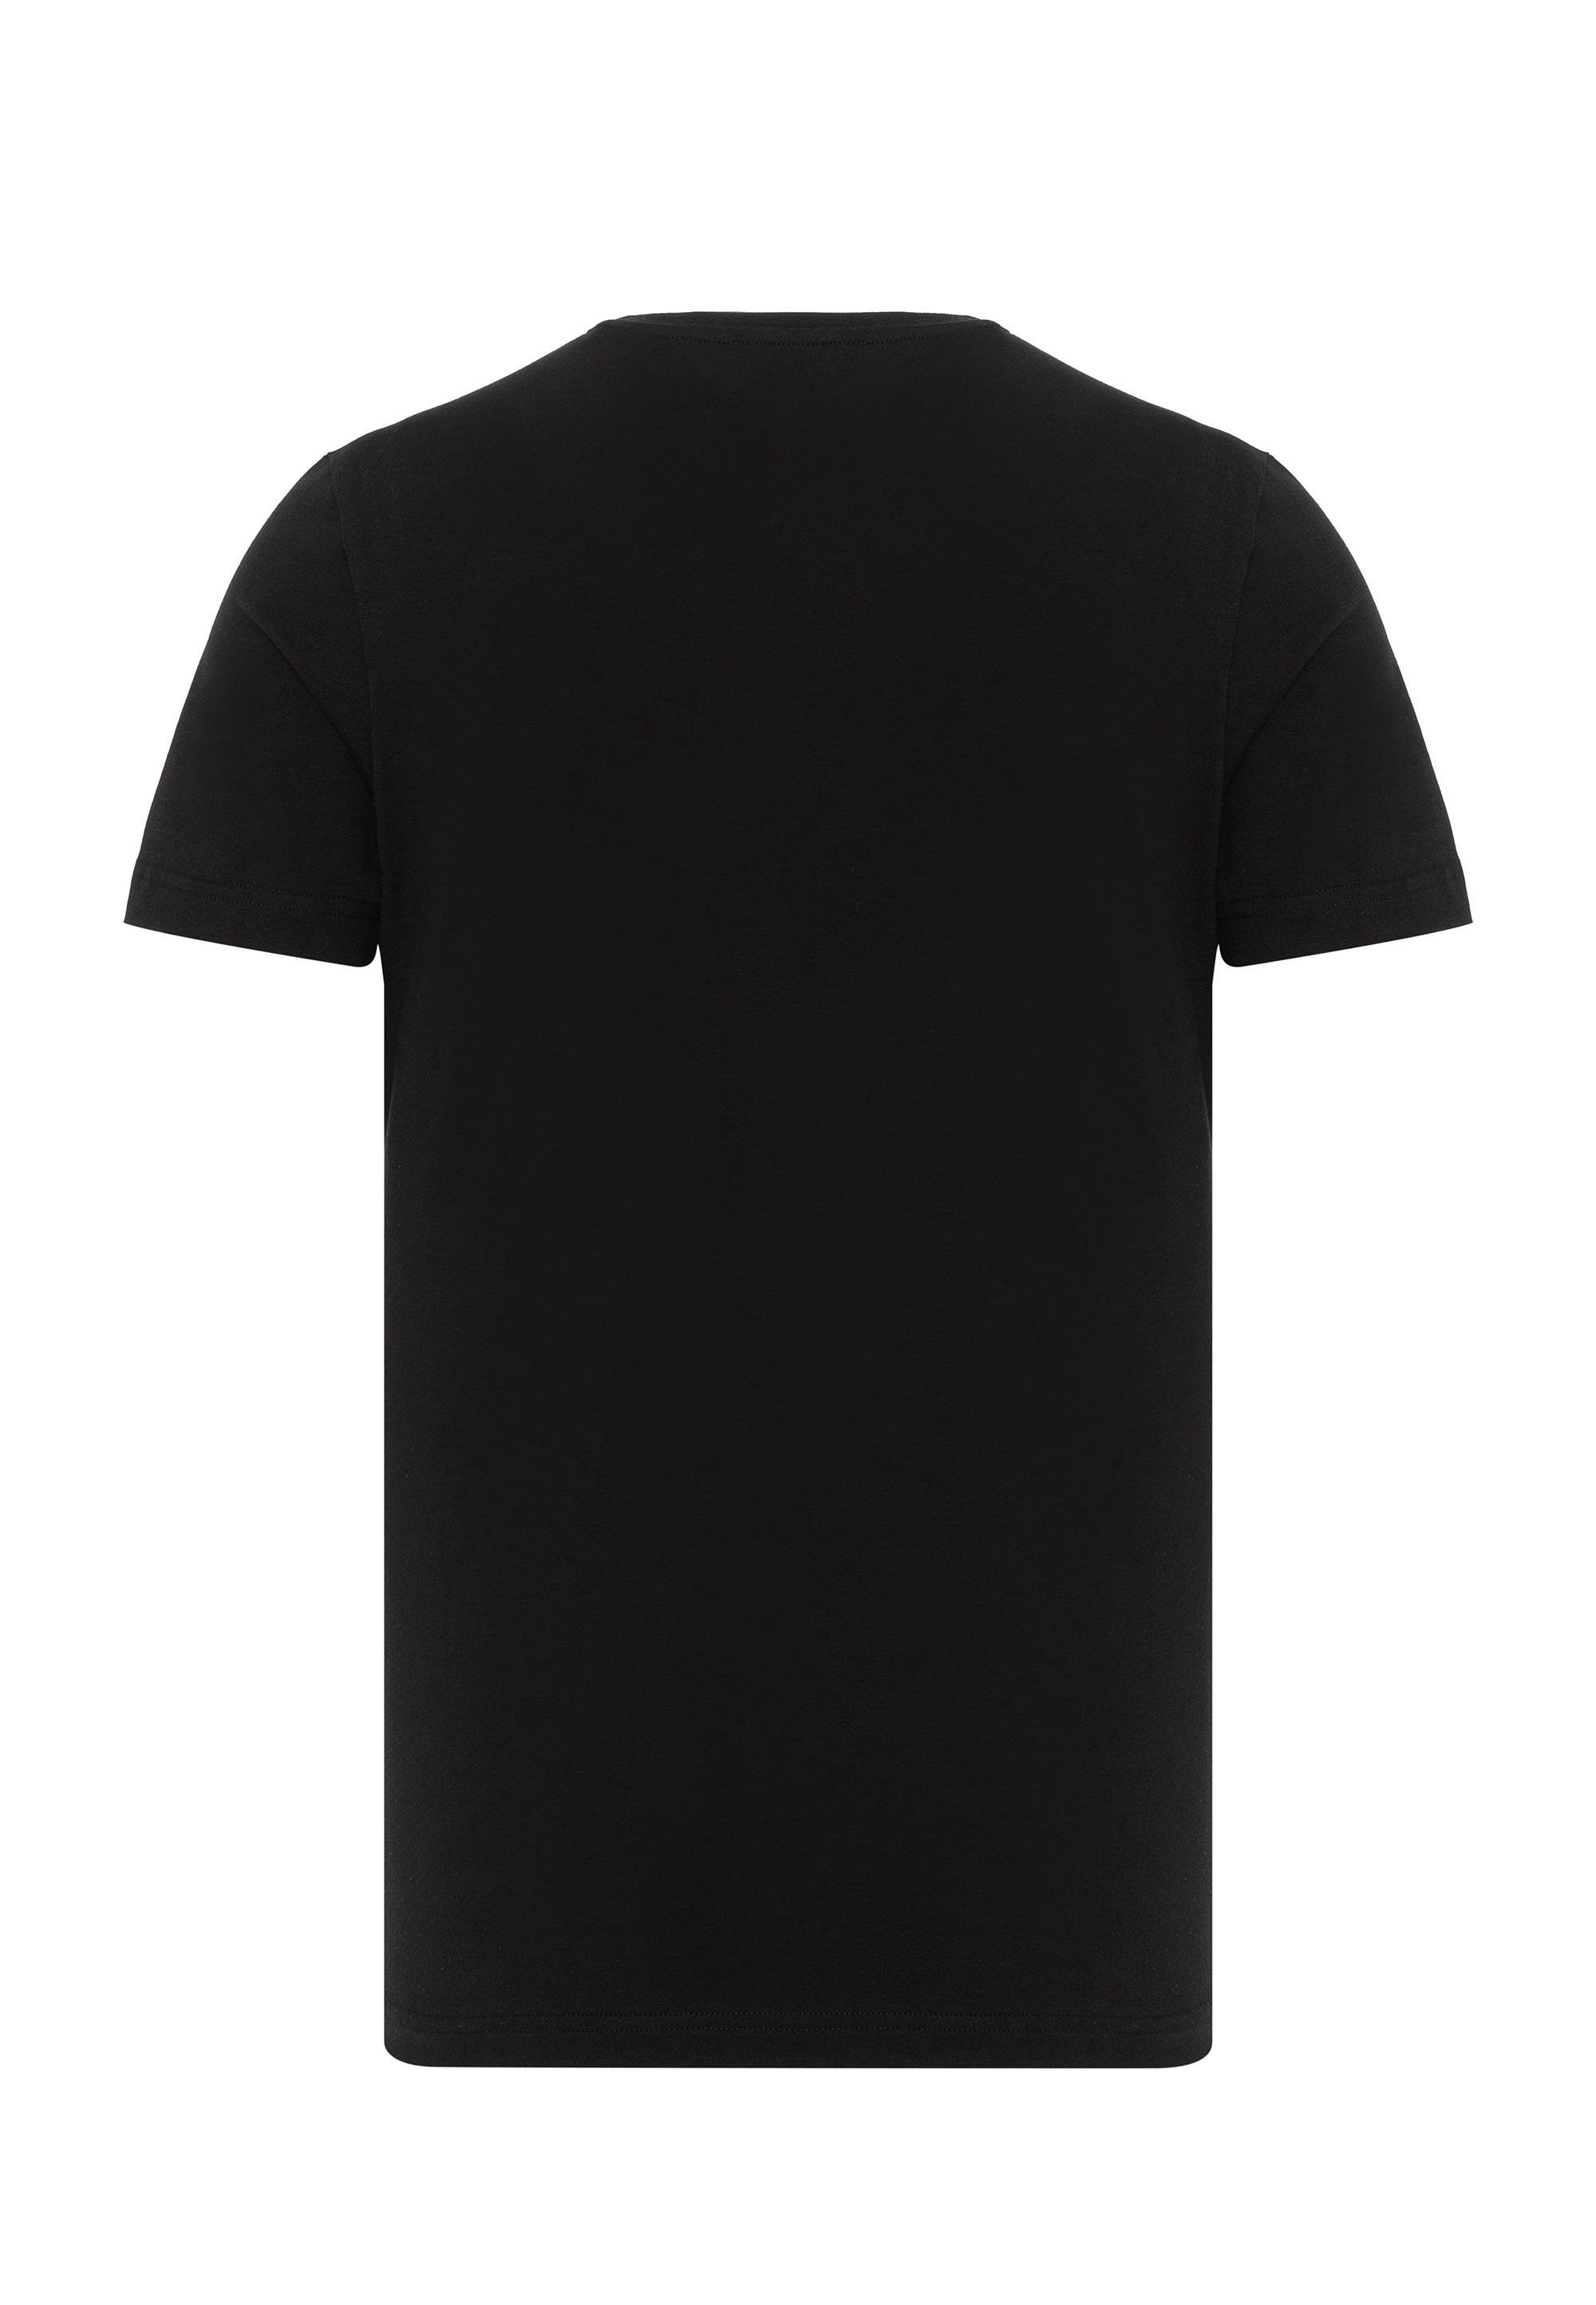 Markenprint & T-Shirt coolem Baxx Cipo mit schwarz